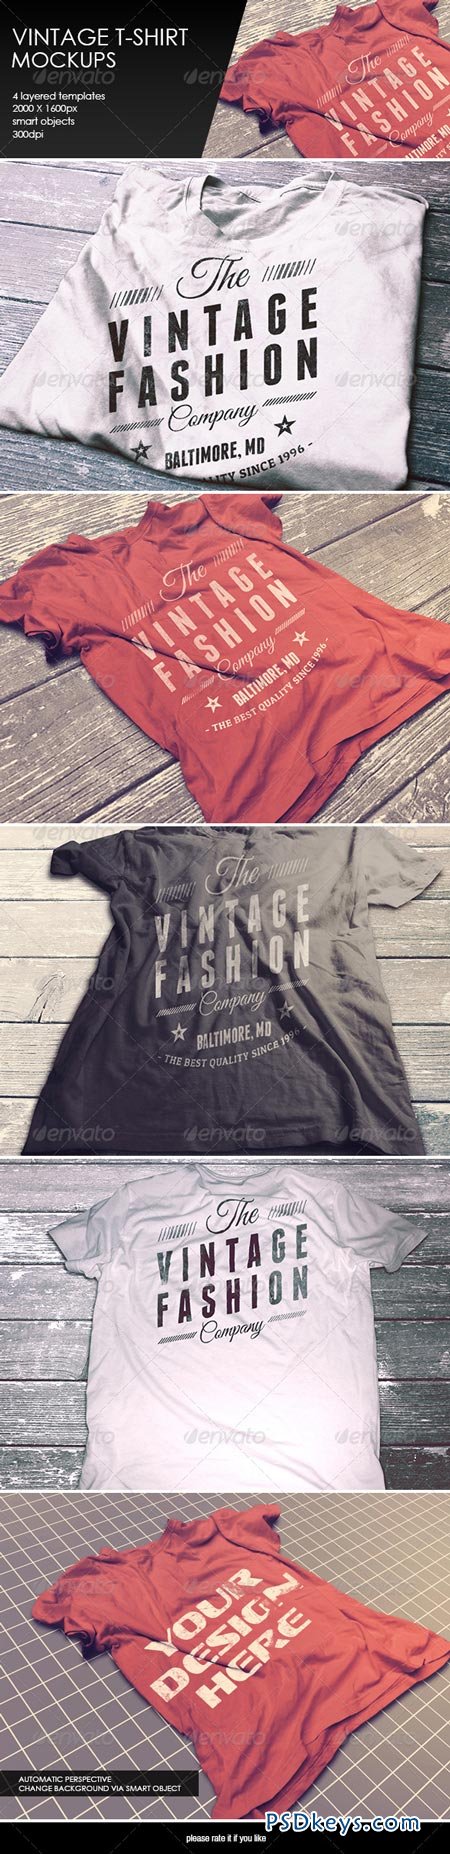 Download Vintage T-Shirt Mockup 8376796 » Free Download Photoshop Vector Stock image Via Torrent ...